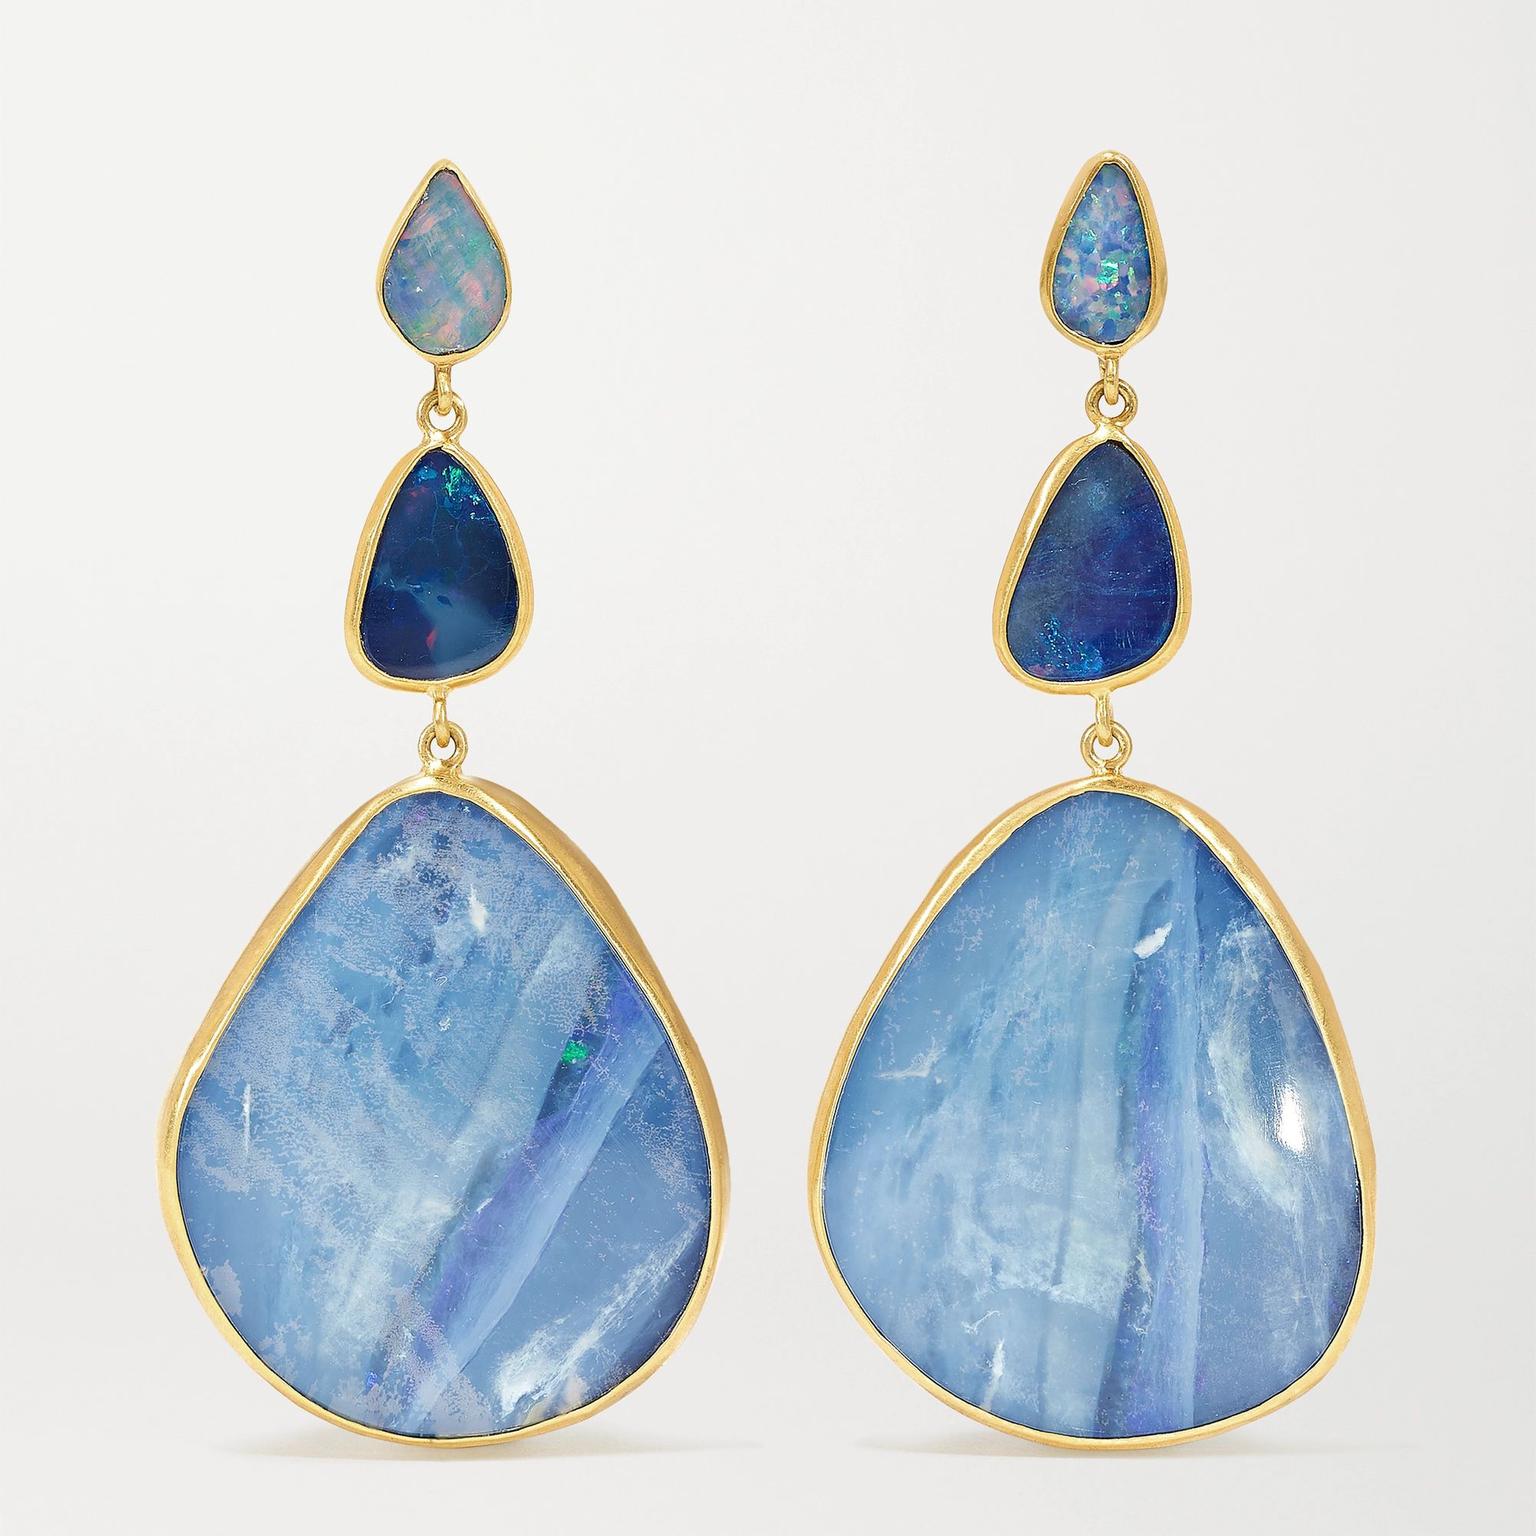  Opal earrings by Pippa Small